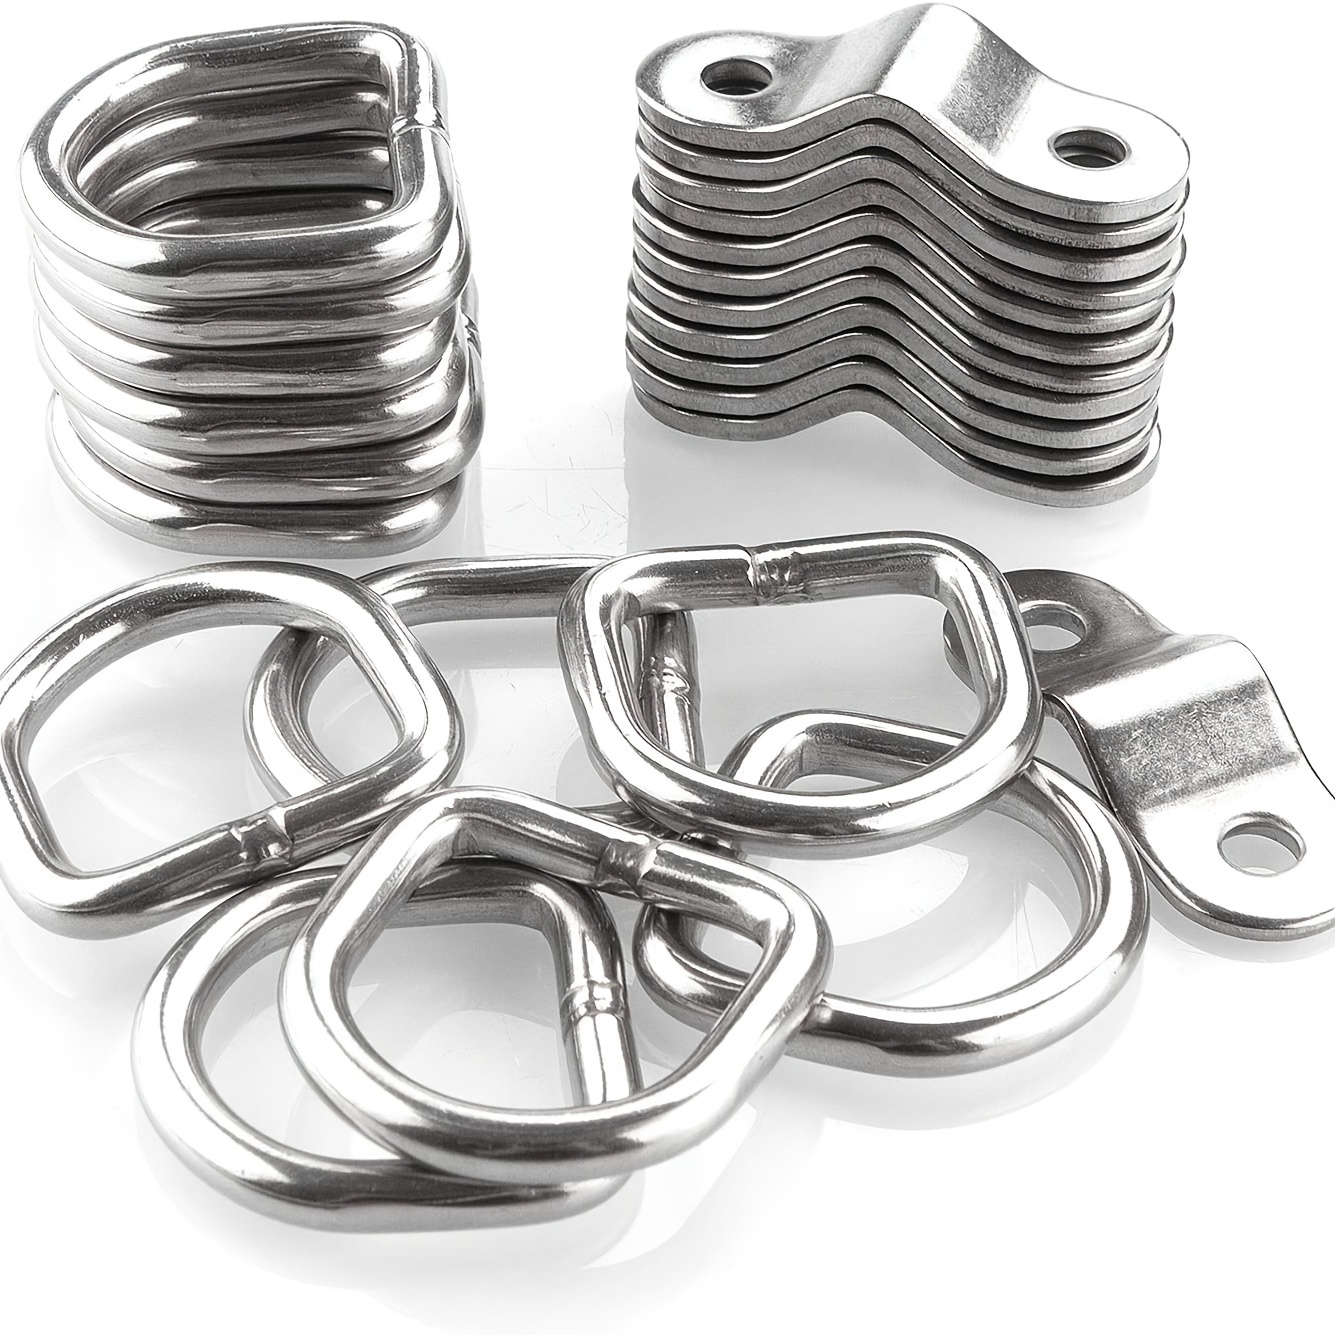 Standard Metal D-Rings in Nickel Plated Steel